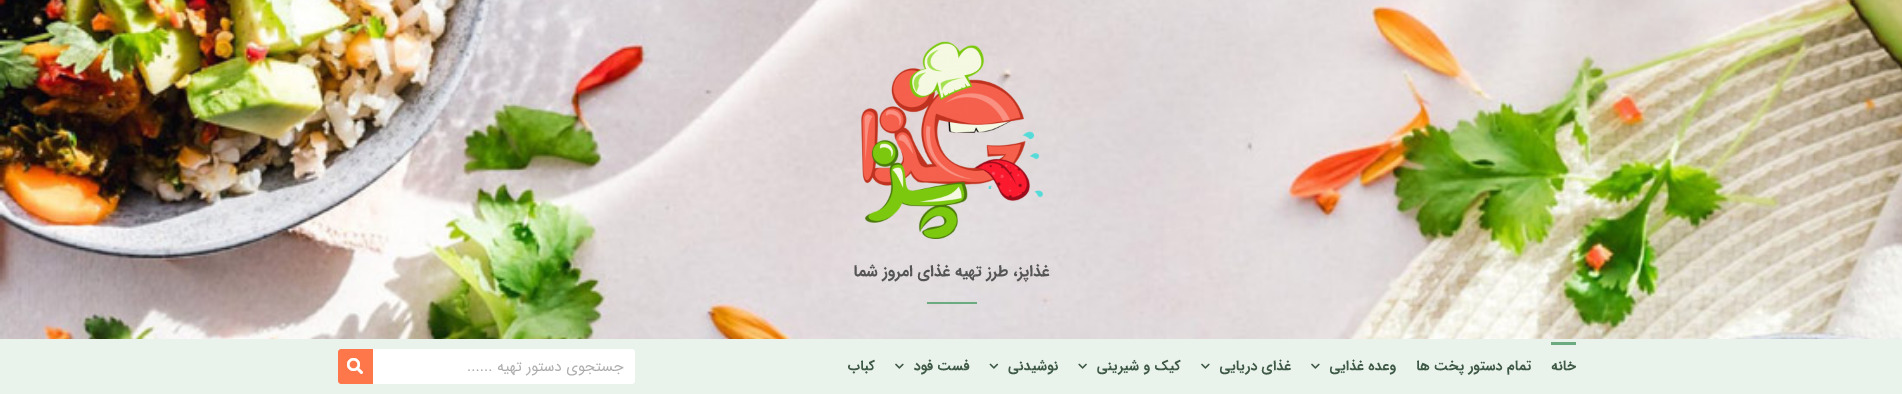 هدر وبسایت محتوای آموزشی غذاپز اردیبهشت ۱۴۰۰